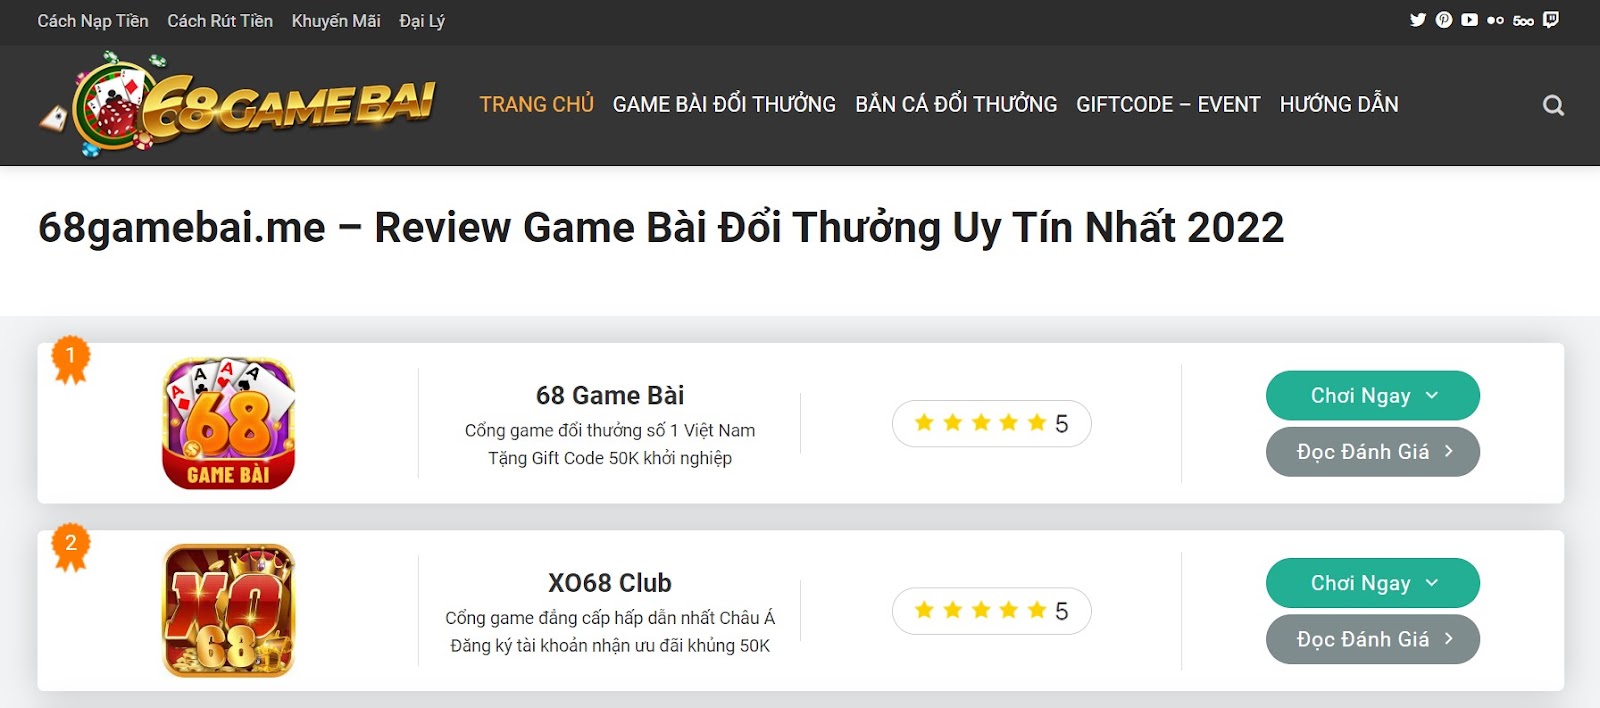 68 Game Bài | 68gamebai.me - Website cung cấp cổng game chính xác nhất